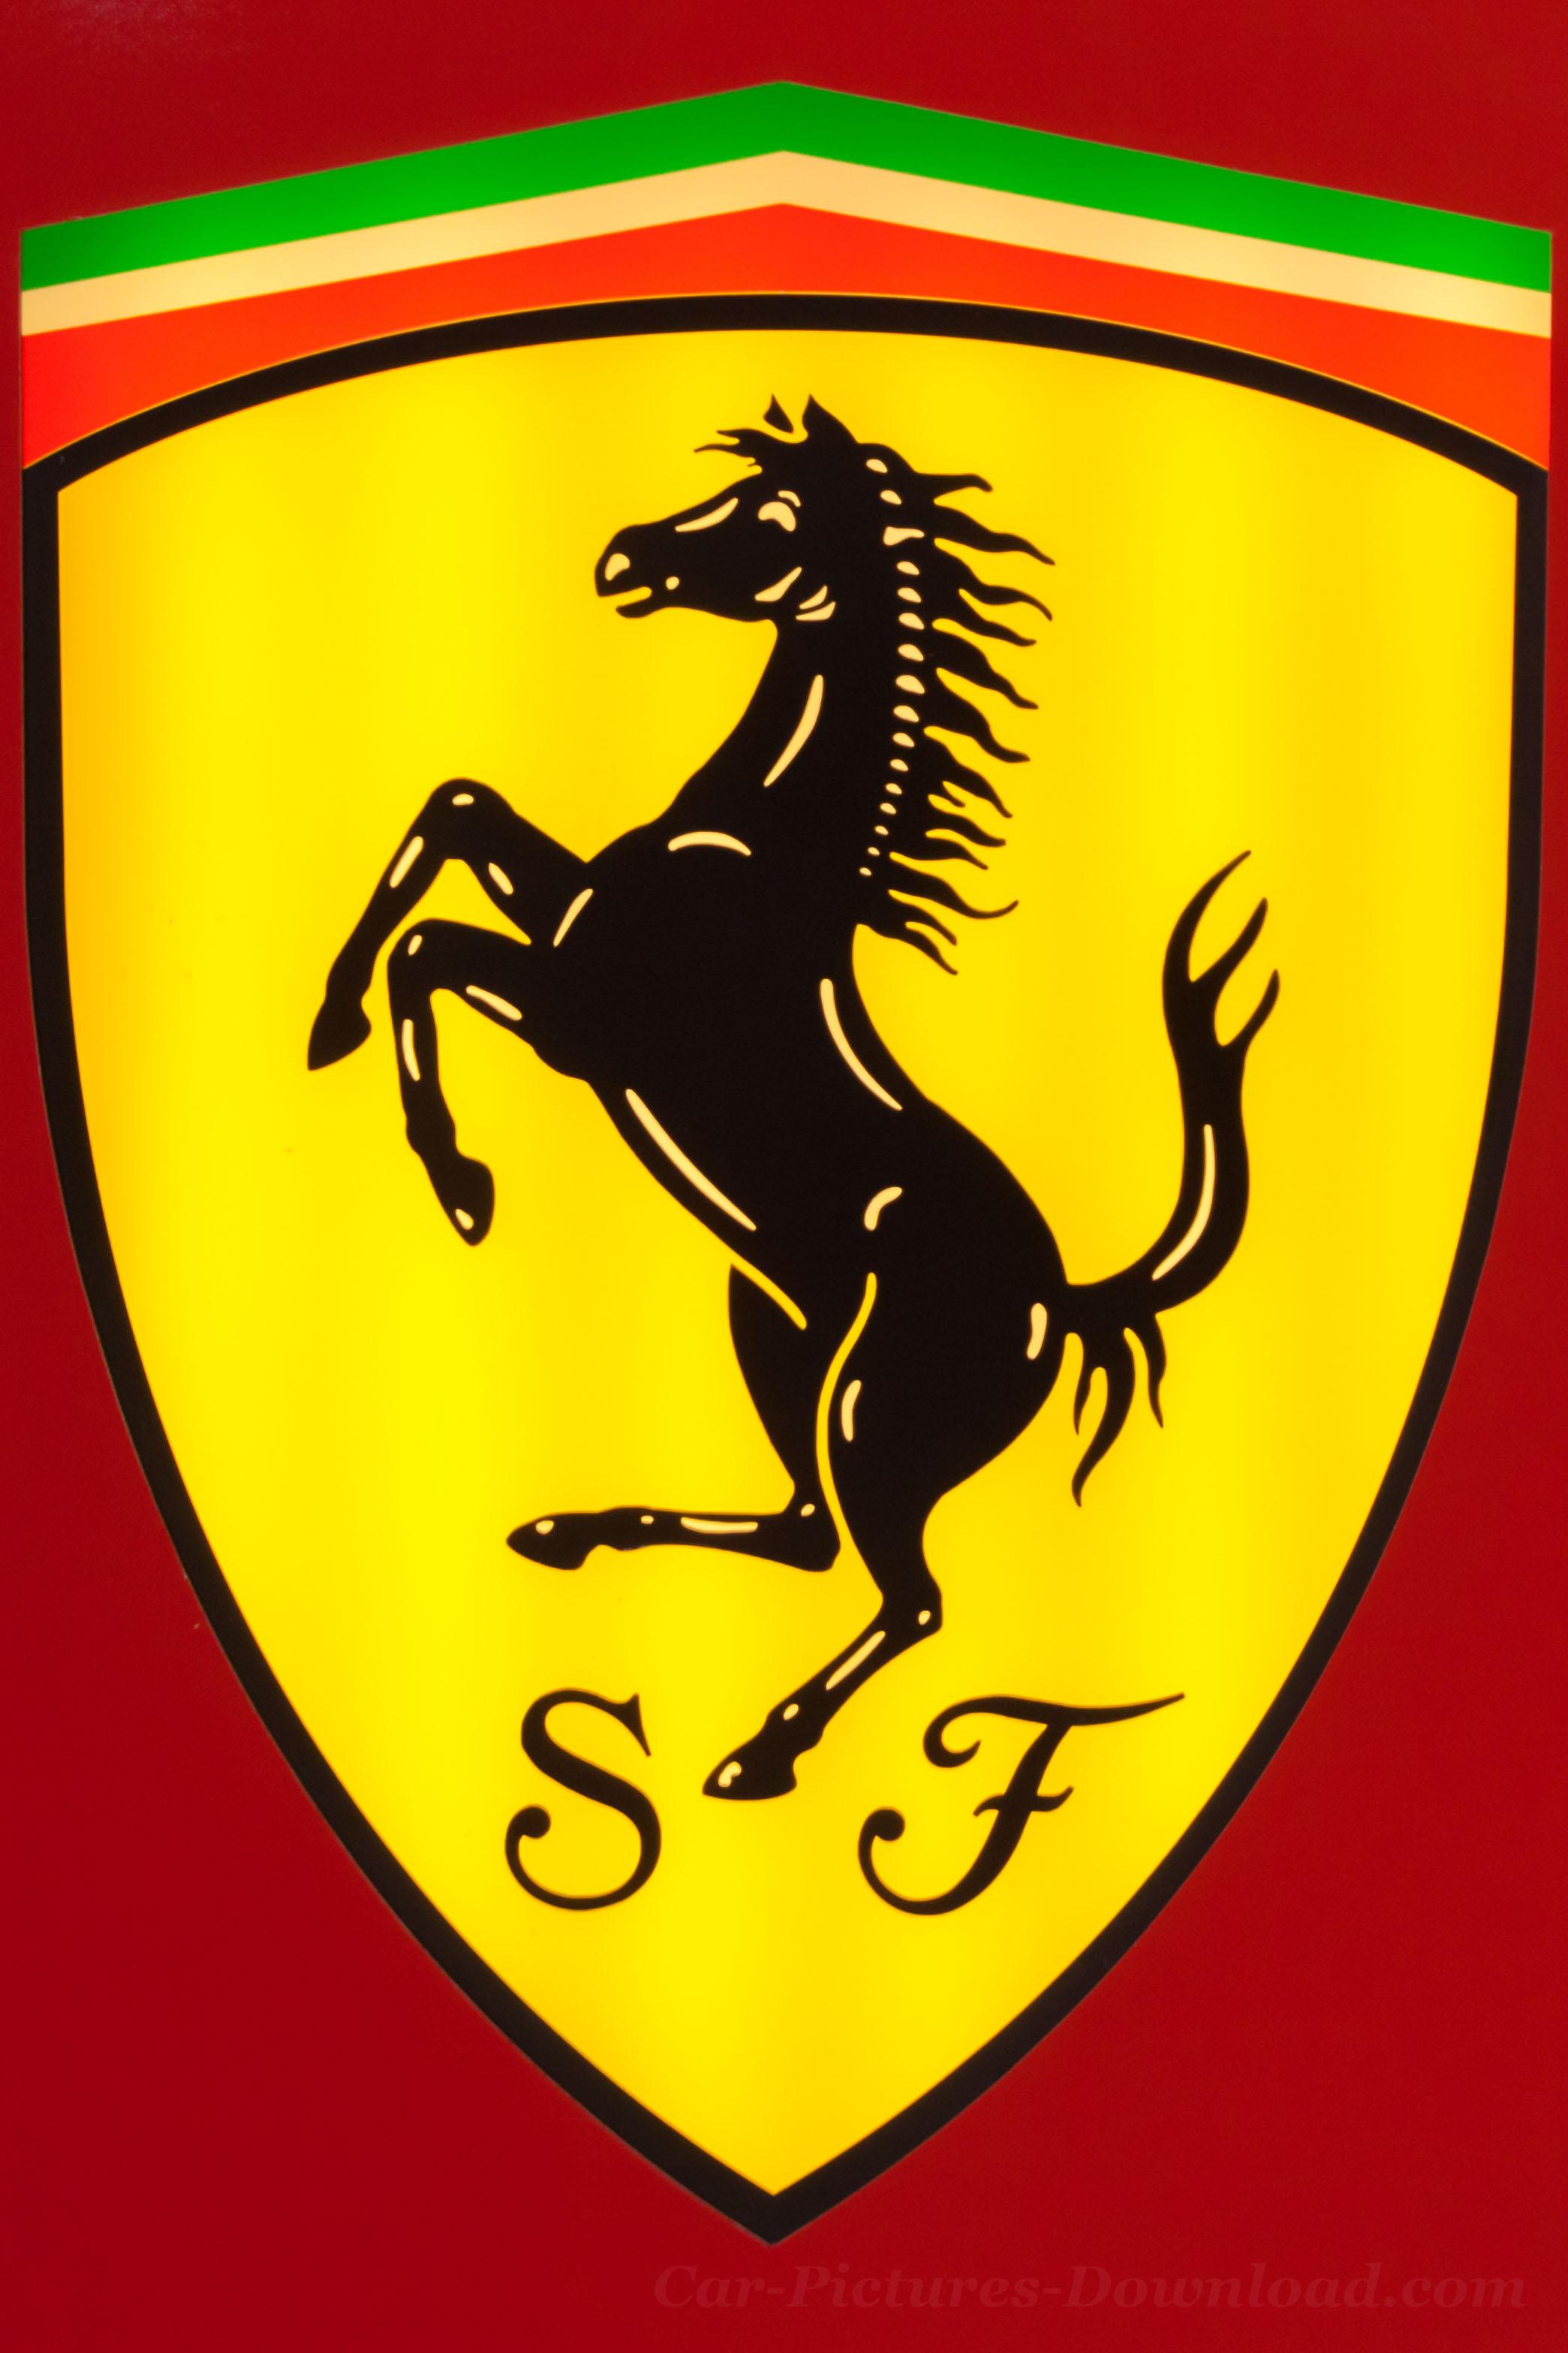 Ferrari Wallpaper For iPhone, Unique & Original